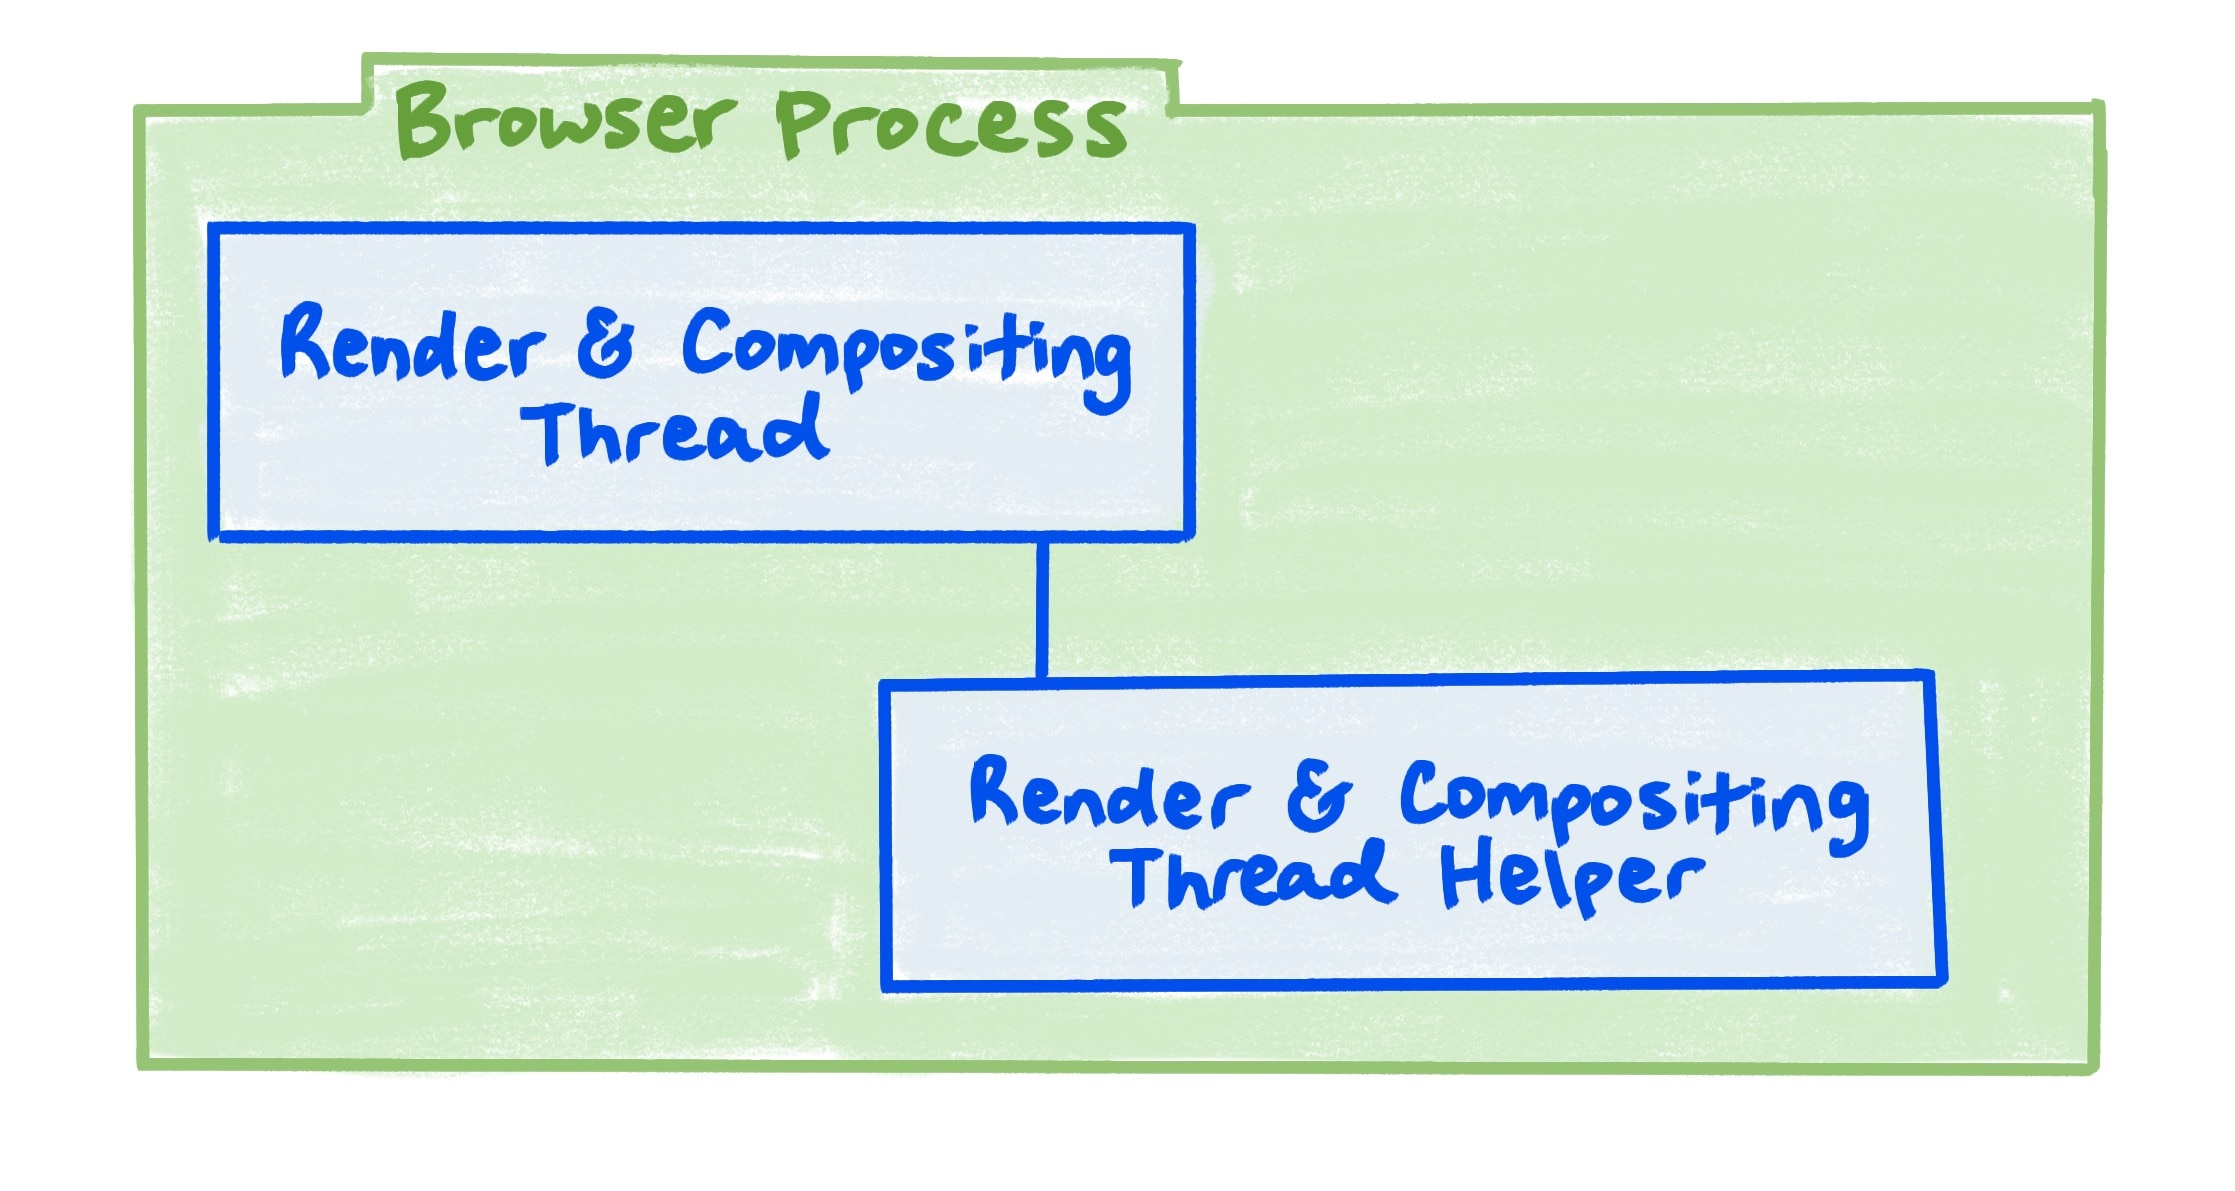 렌더링 스레드와 합성 스레드, 렌더링 및 합성 스레드 도우미 사이의 관계를 보여주는 브라우저 프로세스 다이어그램